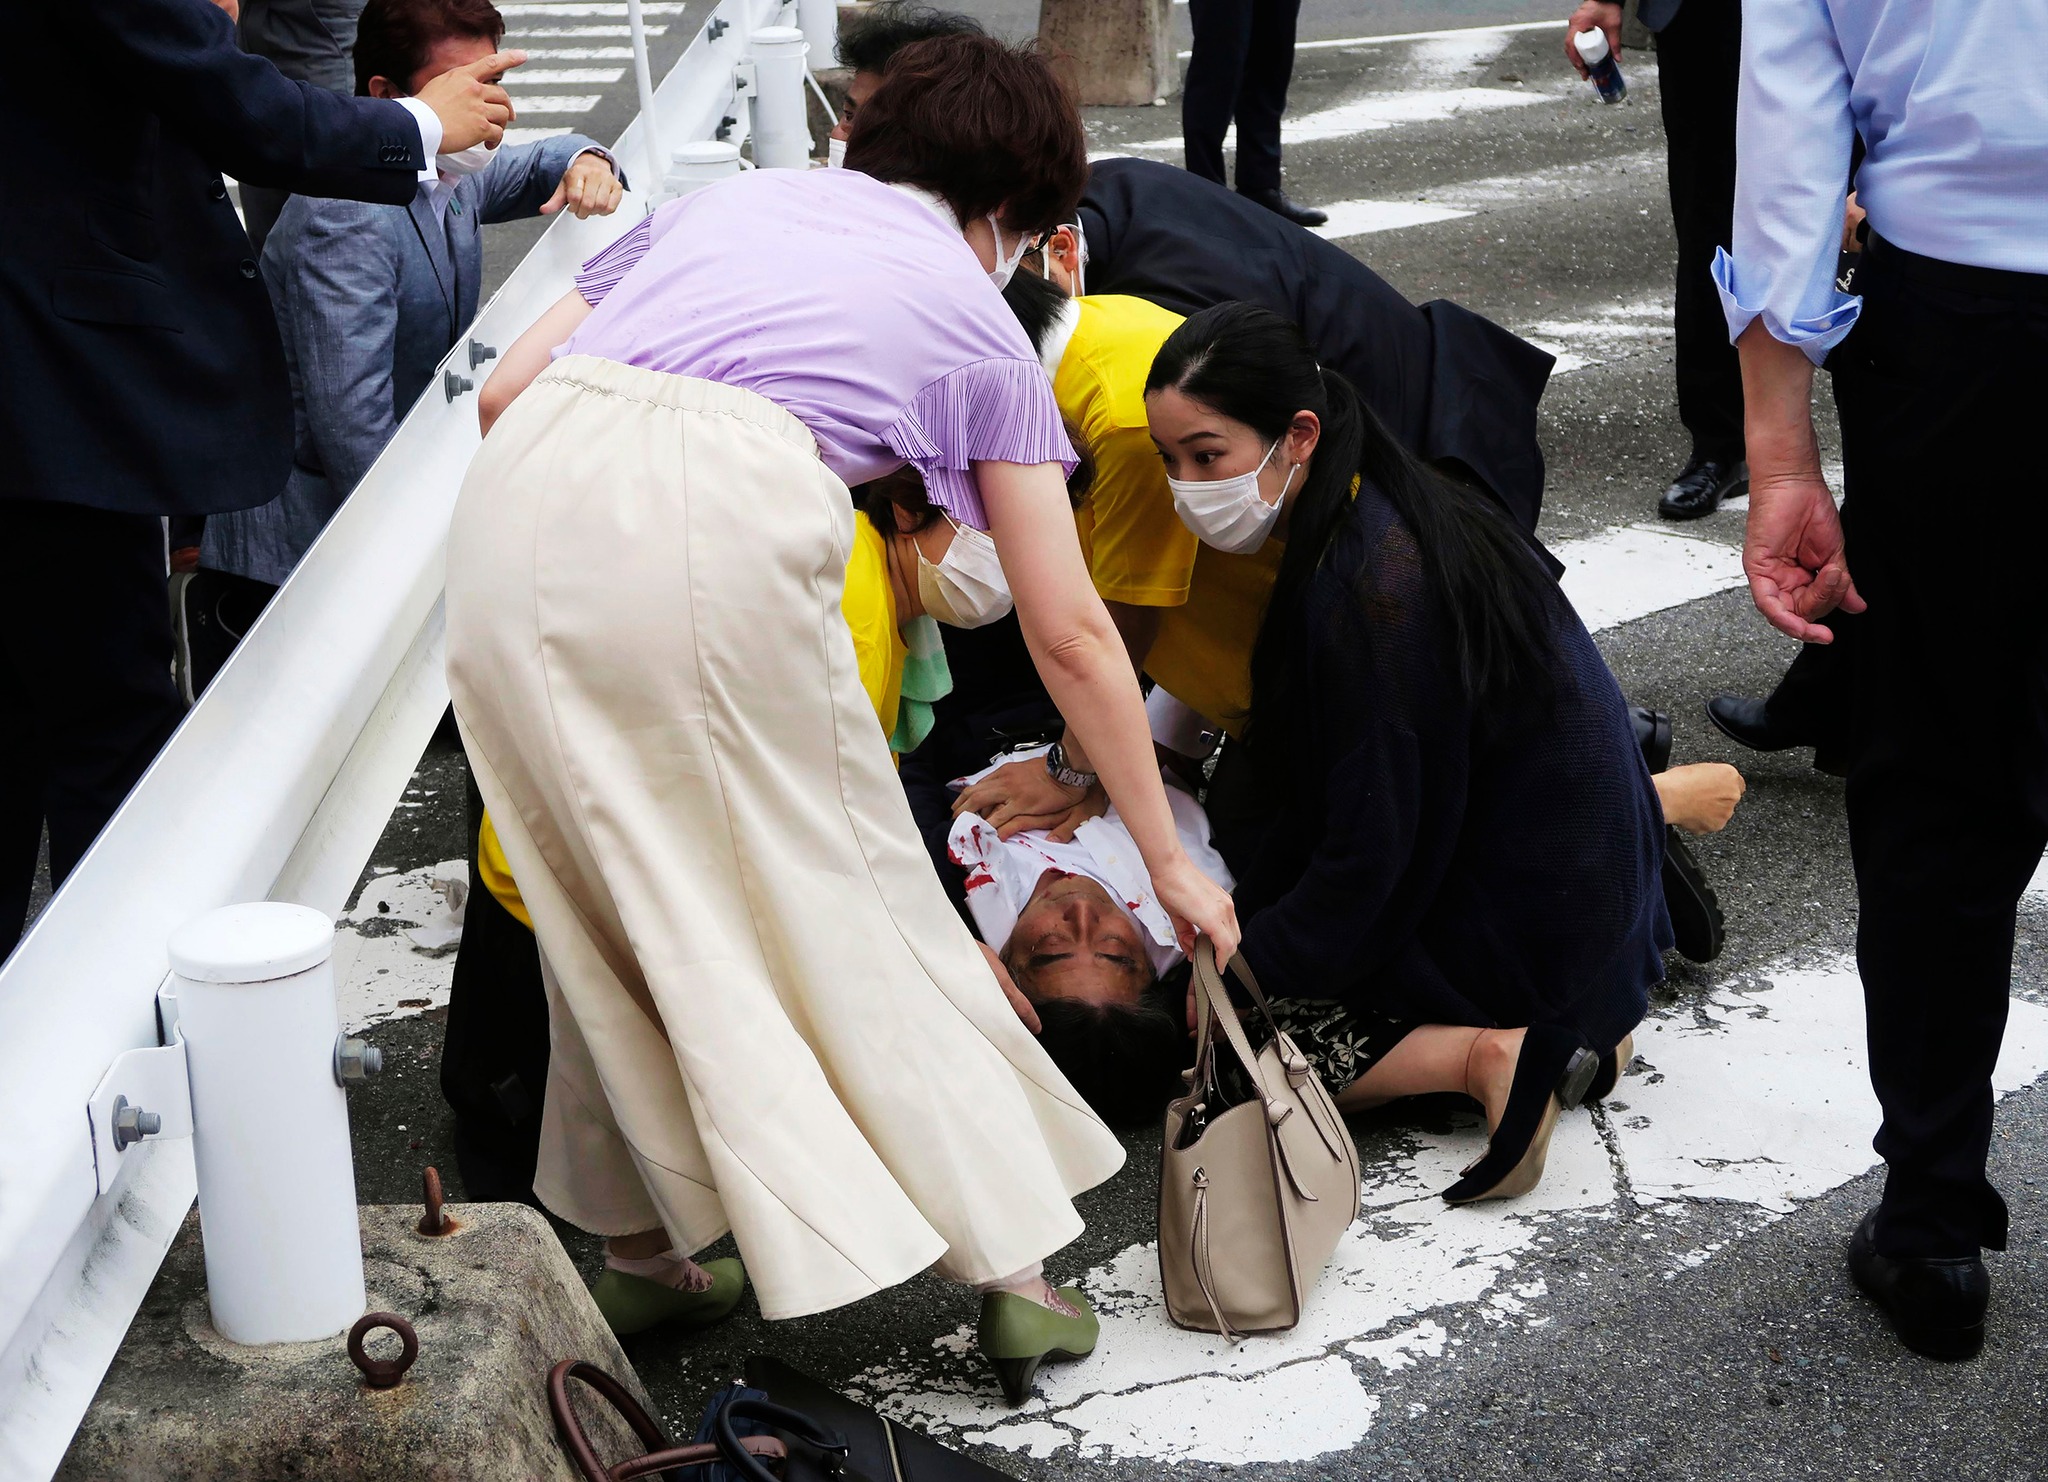 Japonia: Secta Moon în centrul anchetei privind moartea fostului premier Shinzo Abe